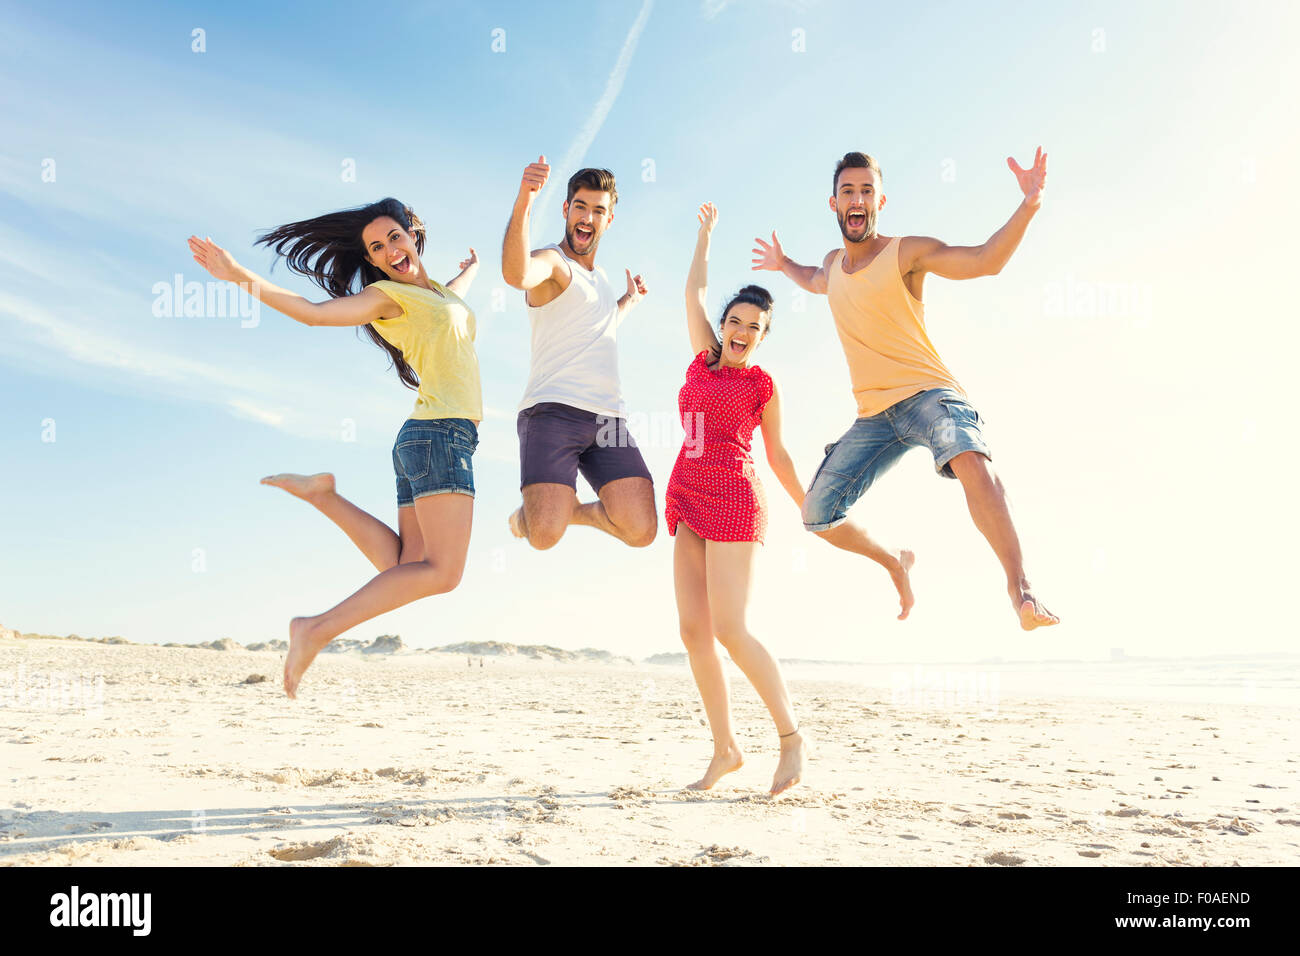 Gruppo di amici facendo un salto insieme in spiaggia Foto Stock